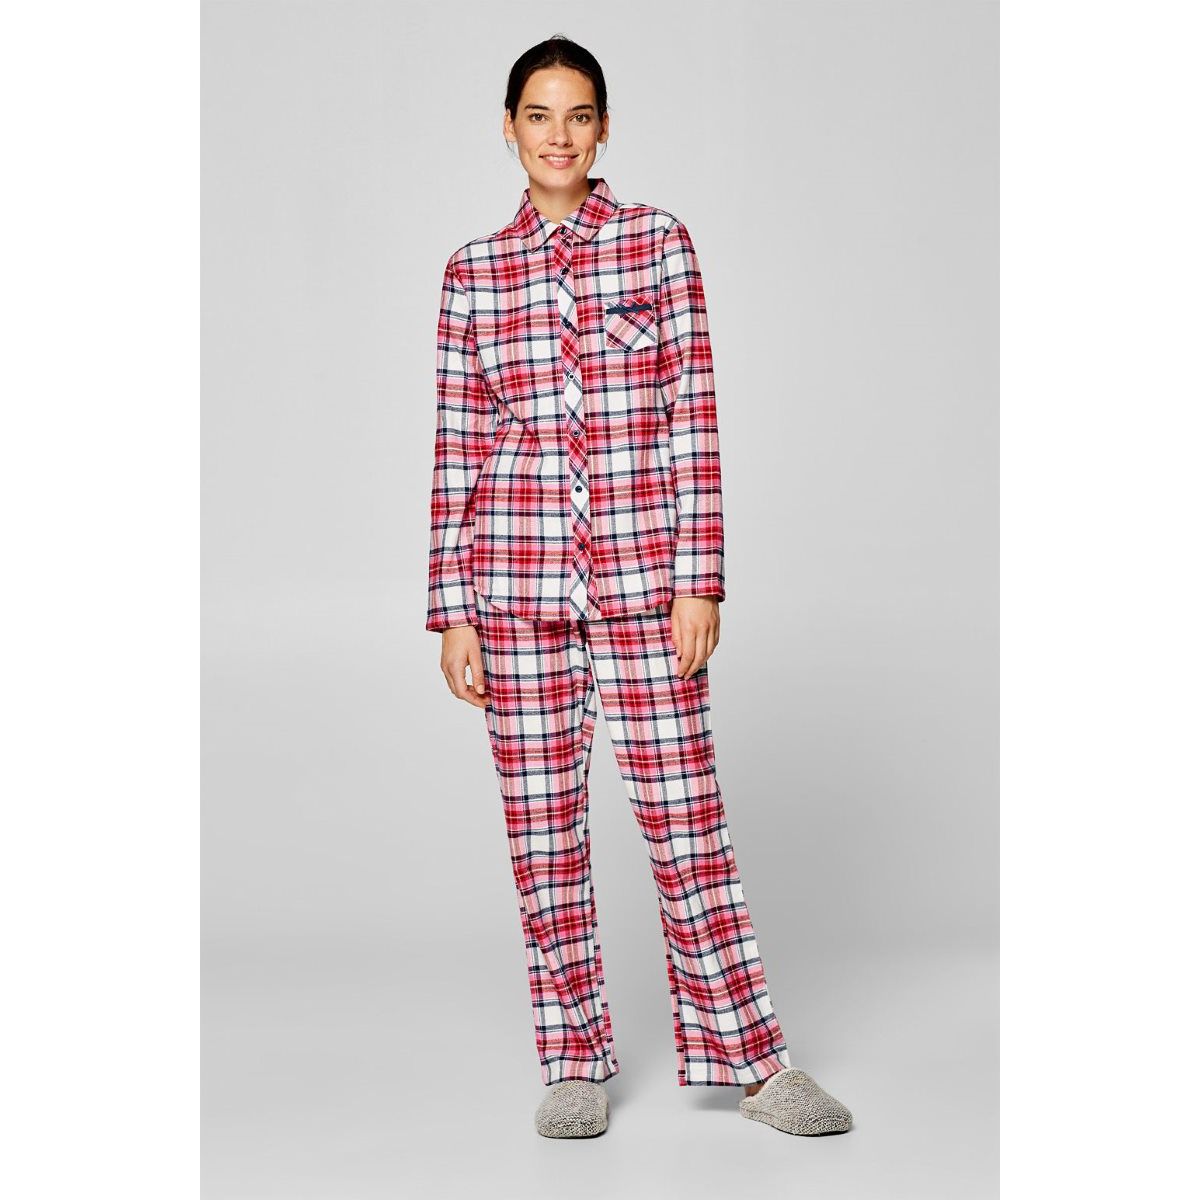 Halloween /Fall Plaid Flanellen Pyjama Broek Lounge Broek Kleding Gender-neutrale kleding volwassenen Pyjamas & Badjassen Pyjama Verkrijgbaar in maat XS-XXL met "DEEP" Zakken! Familie Pyjama 